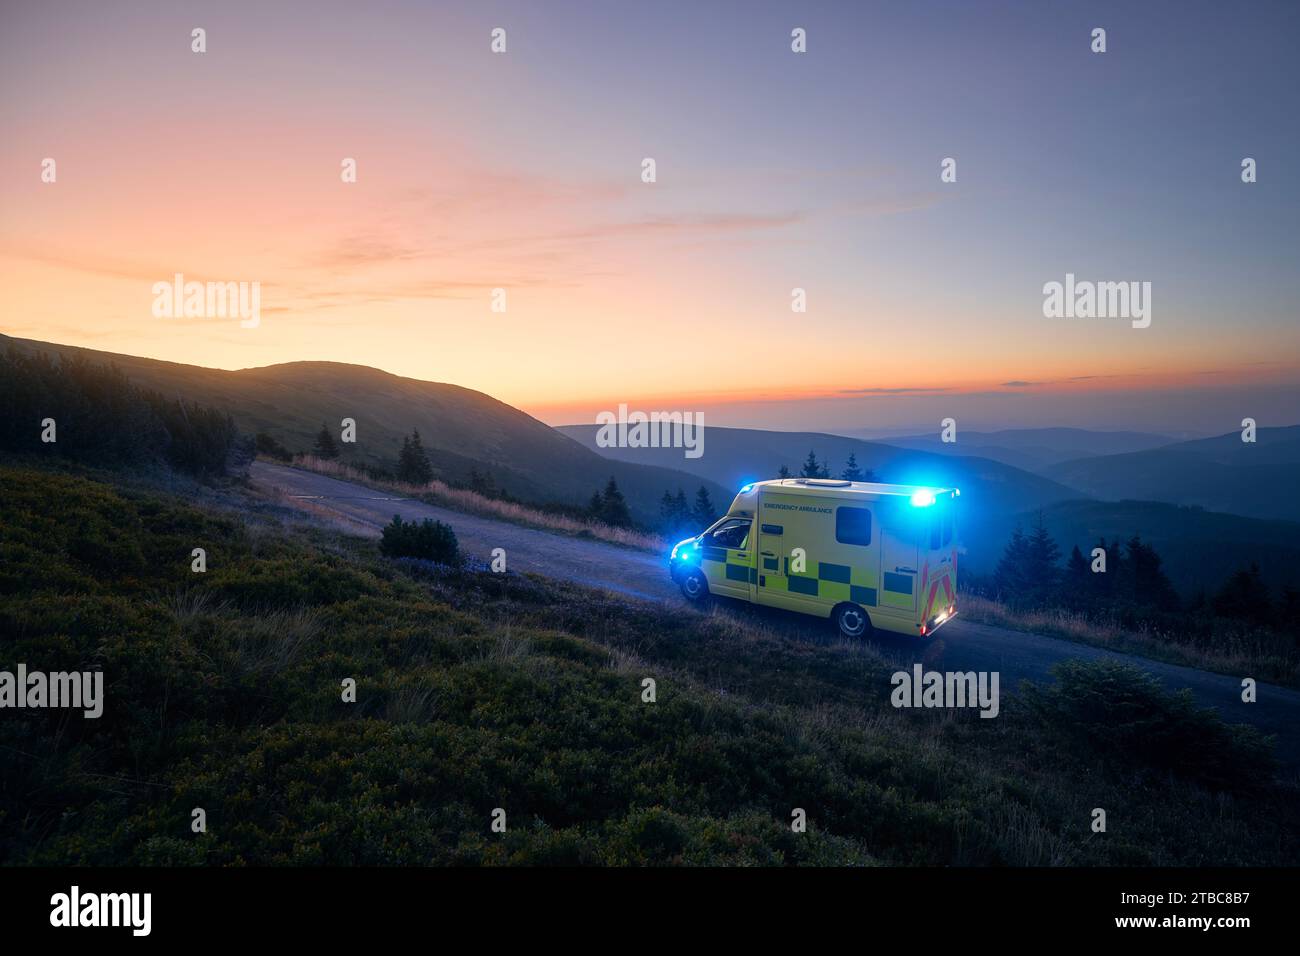 Ambulanza auto di servizio medico di emergenza strada di montagna contro l'alba. Moody Sky con spazio per le copie. Temi salvataggio, urgenza e assistenza sanitaria. Foto Stock